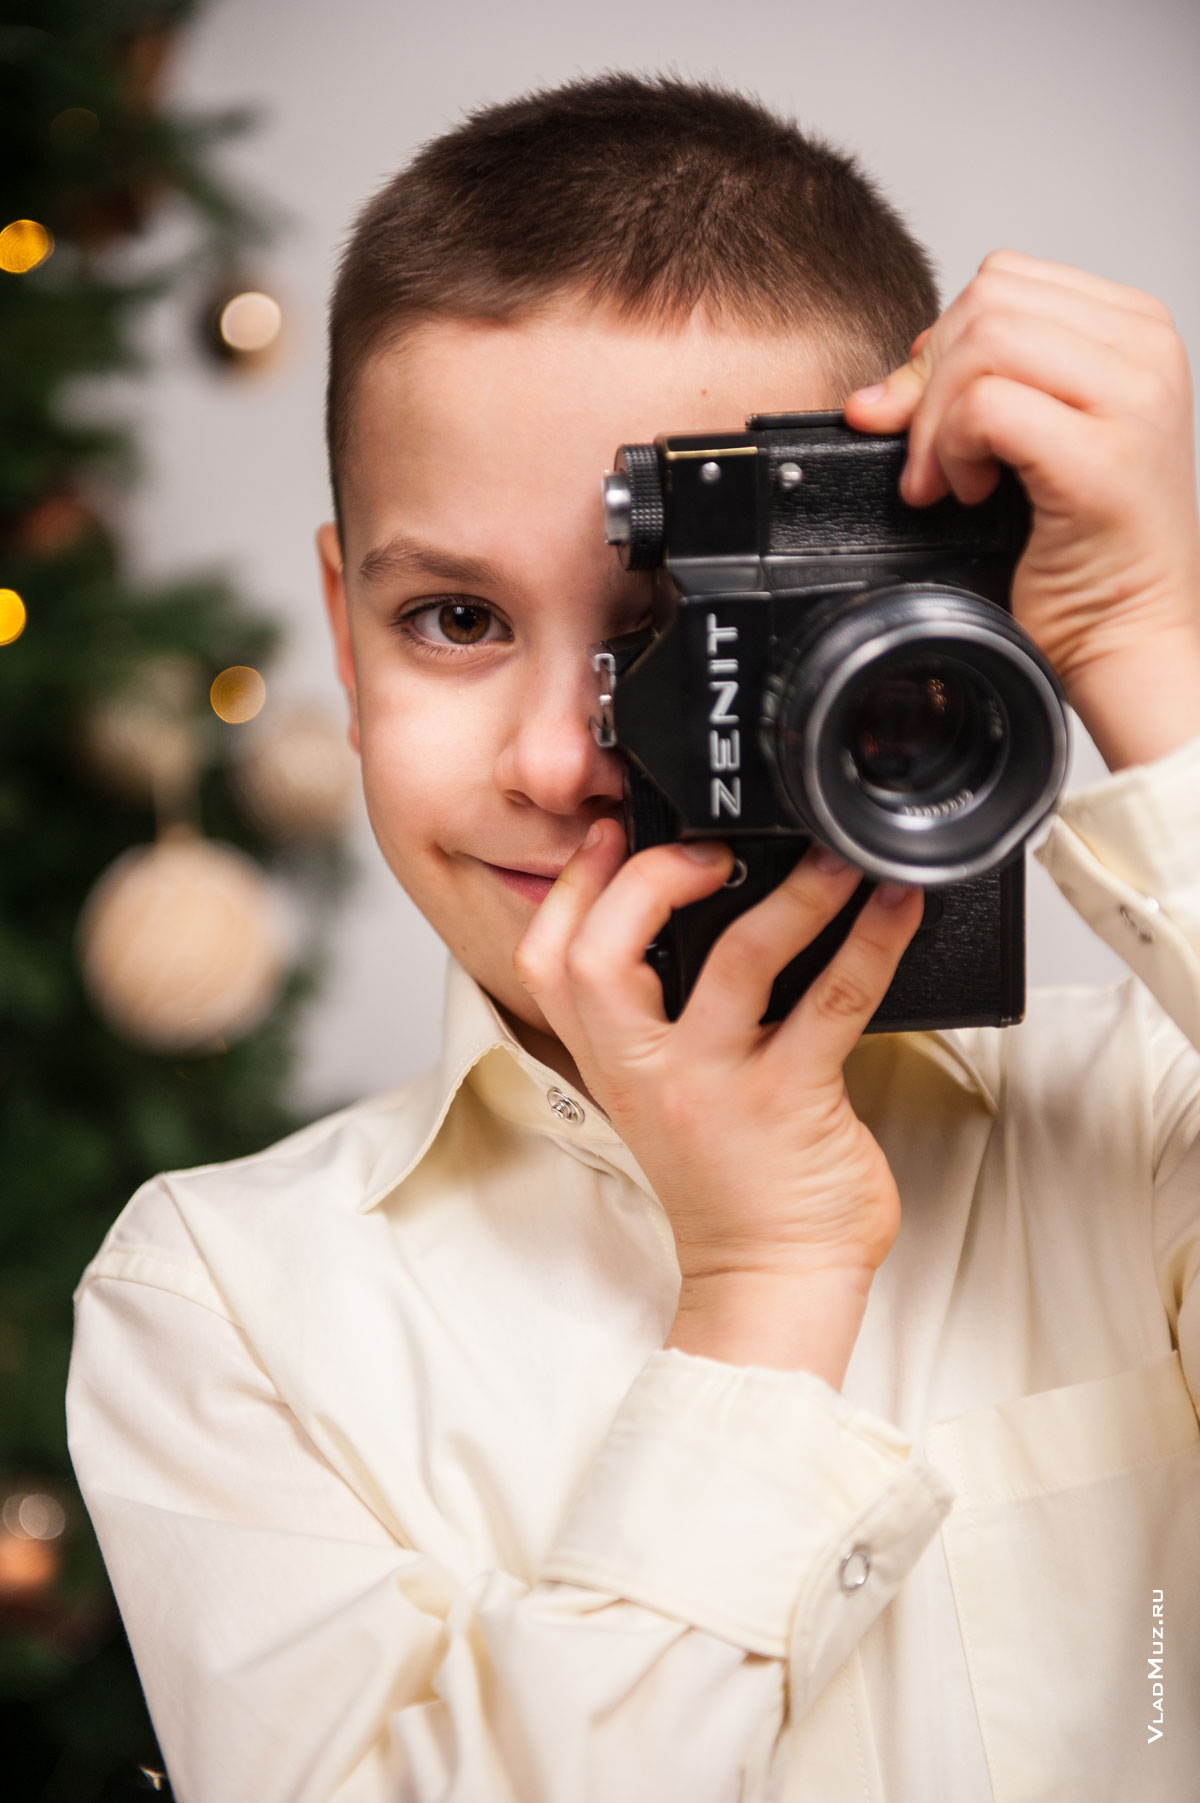 Фото мальчика-фотографа с фотокамерой Zenit